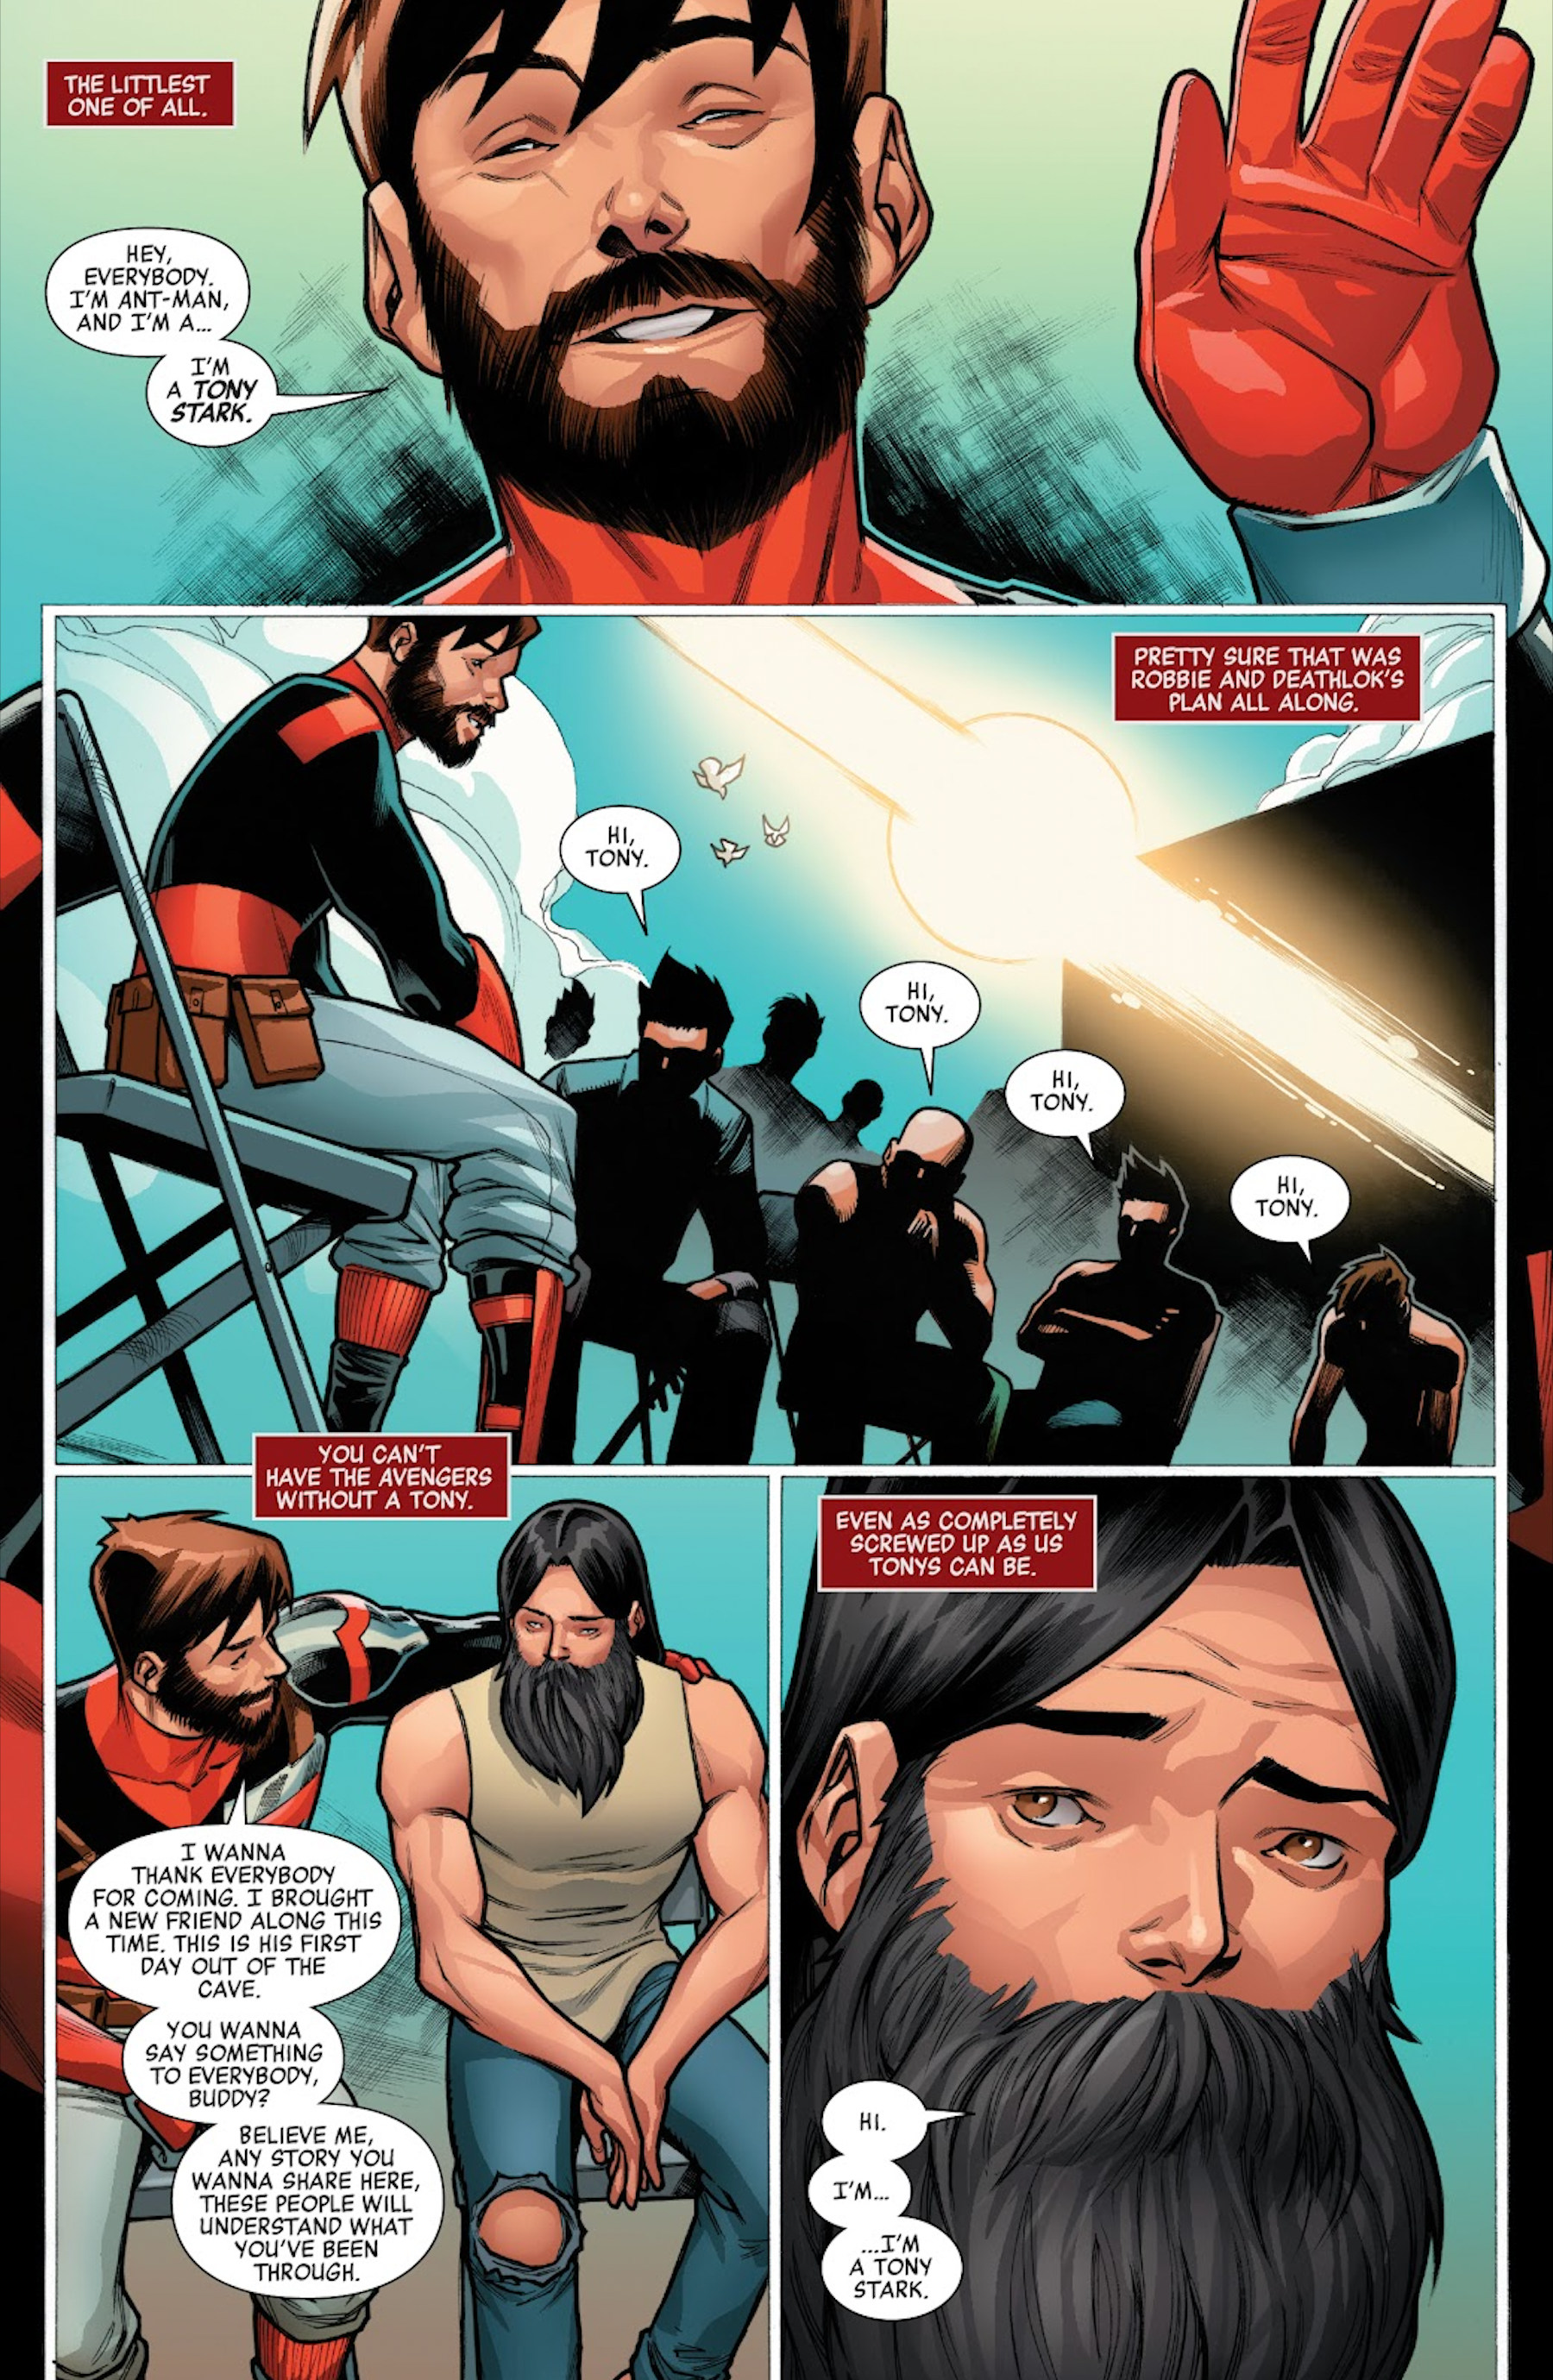 Homem de Ferro cria o Grupo de Apoio Tony Stark